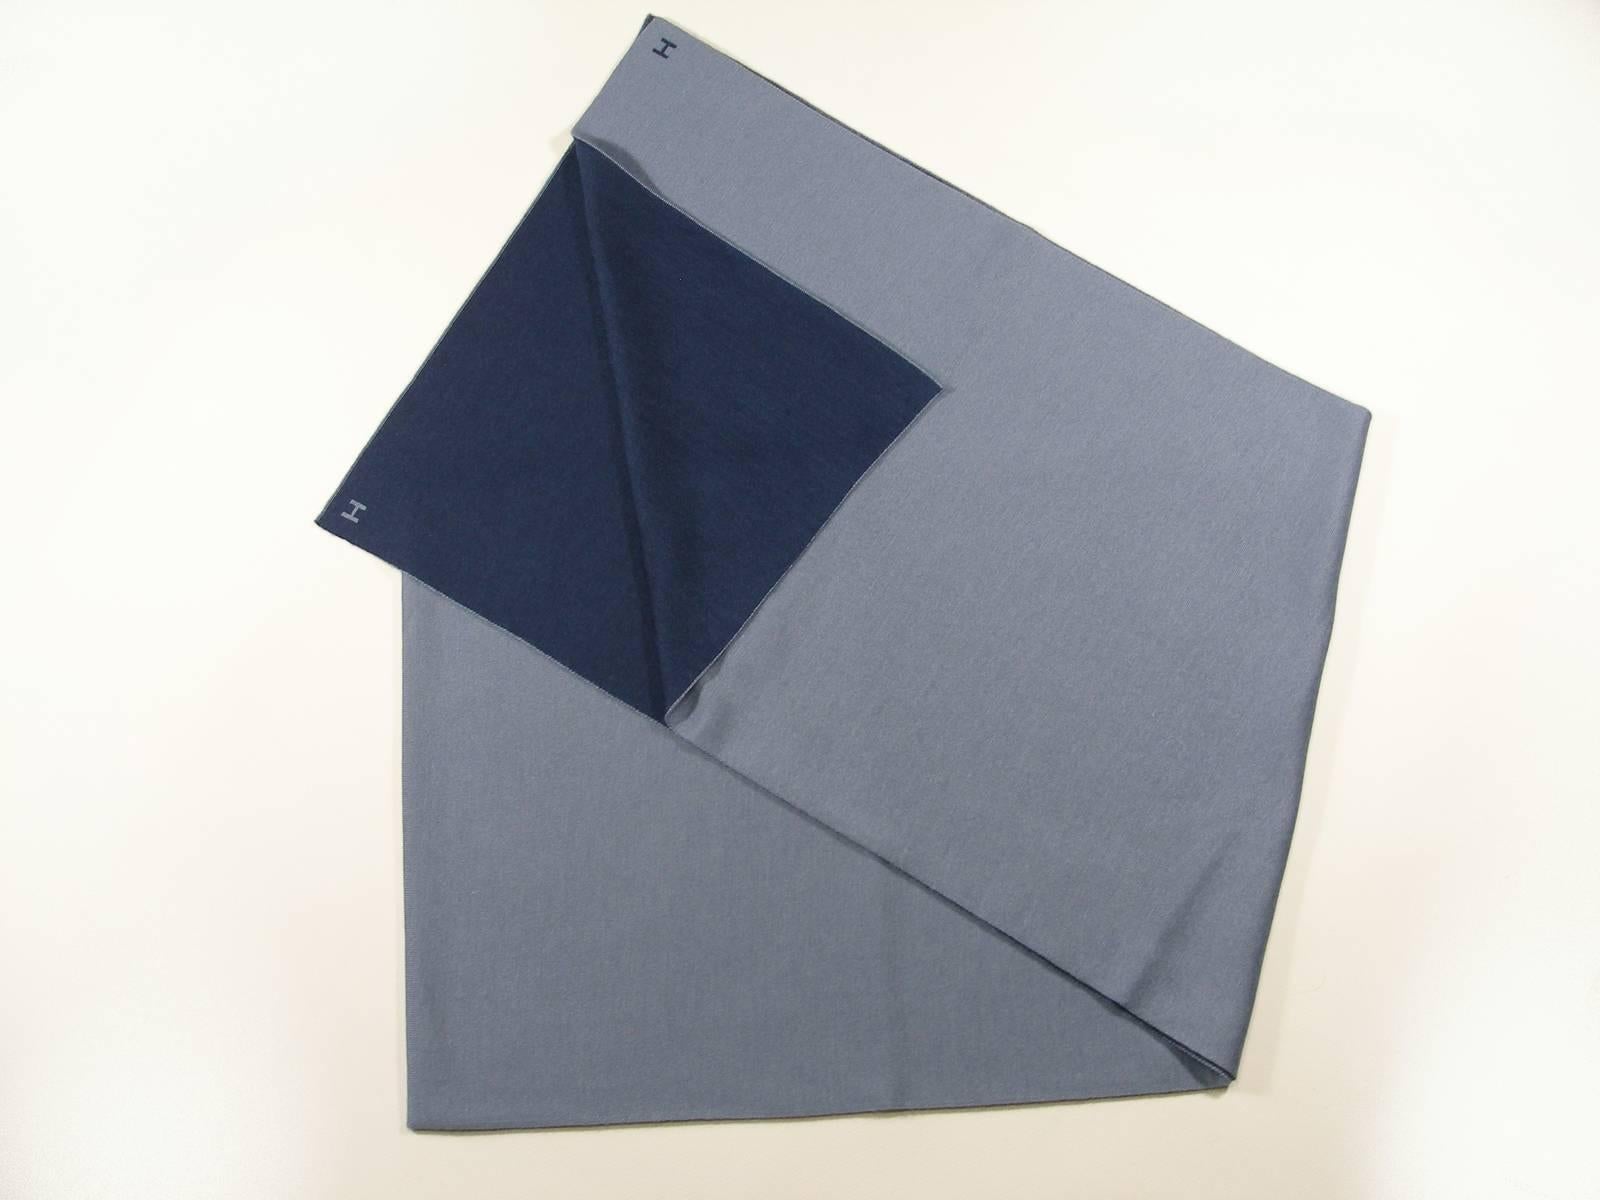 Classique Scarf for Men Aller / Retour
Color : bleu gris réservible bleu océan
Absoluty Brand New
RTP : $540
Cashmere and Silk 
70% cashmere, 30% silk
Measures 11.8'' x 71